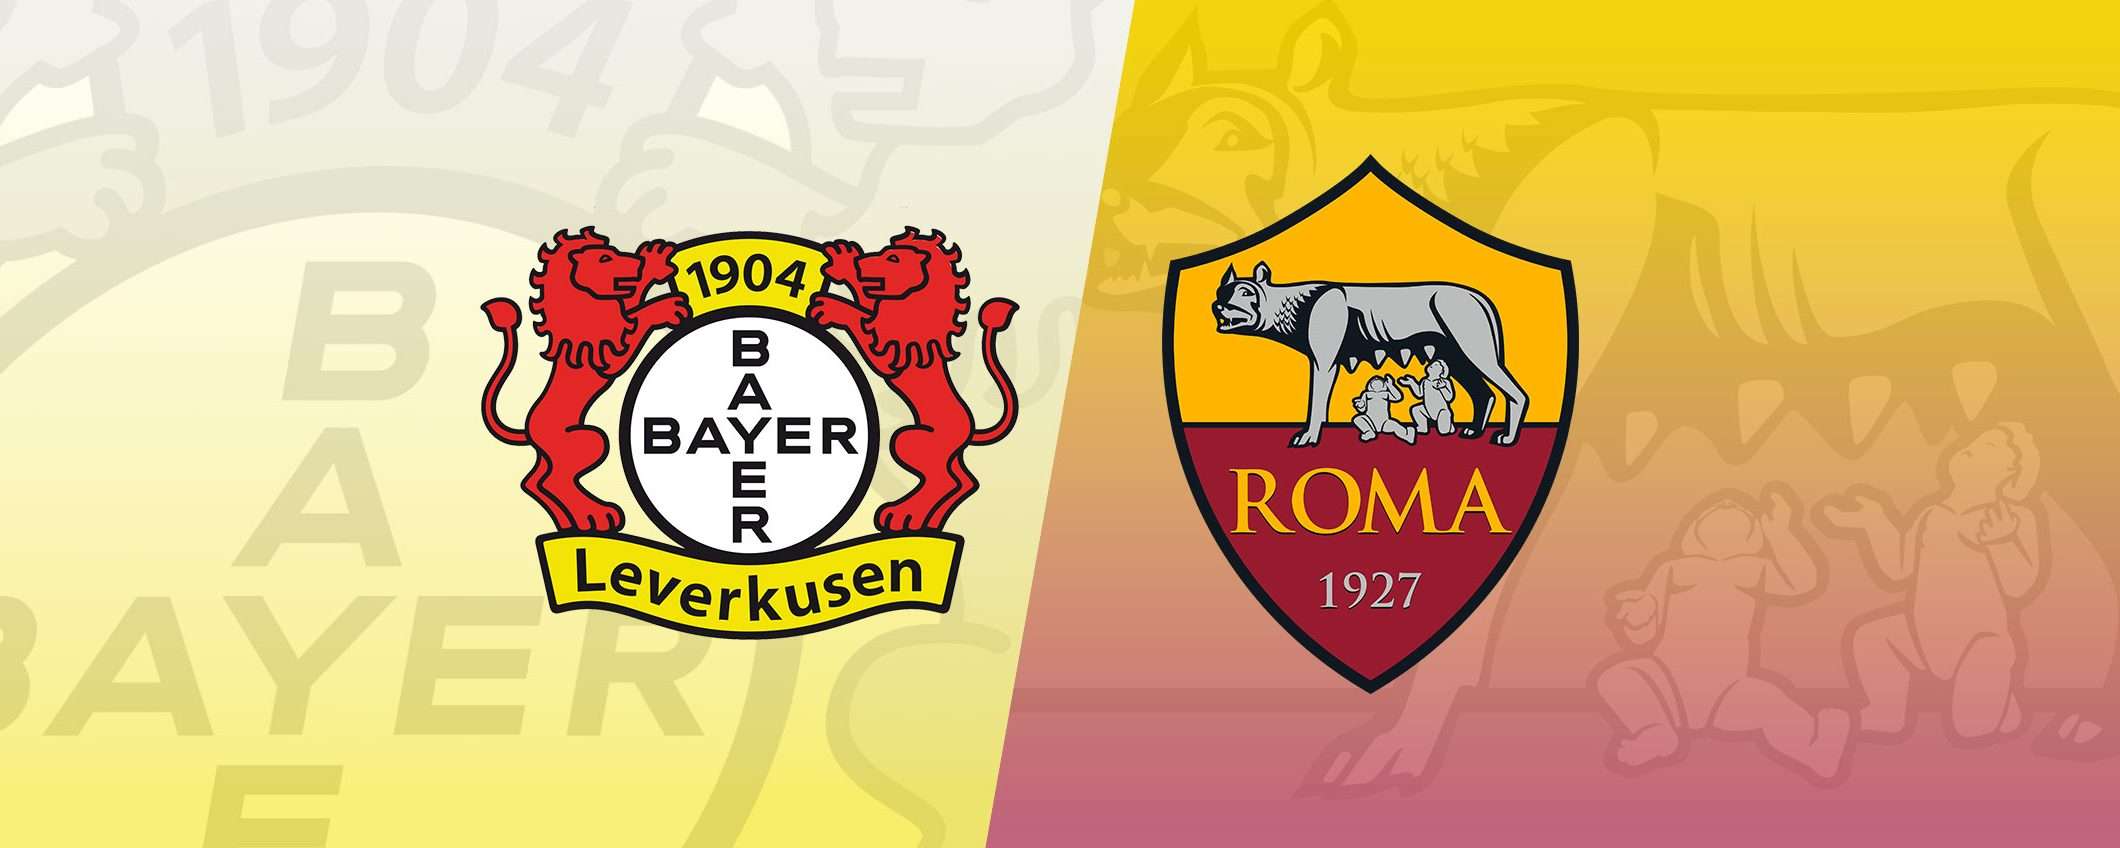 Come vedere Leverkusen-Roma in diretta streaming dall'estero